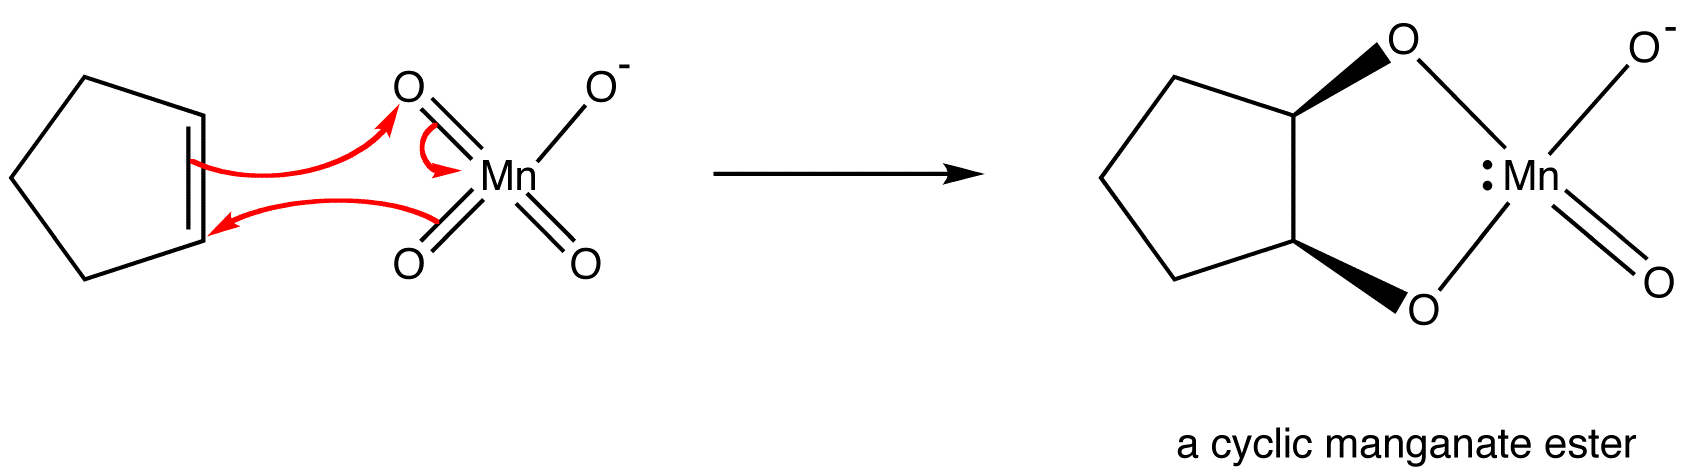 cyclicmanganateester1.png